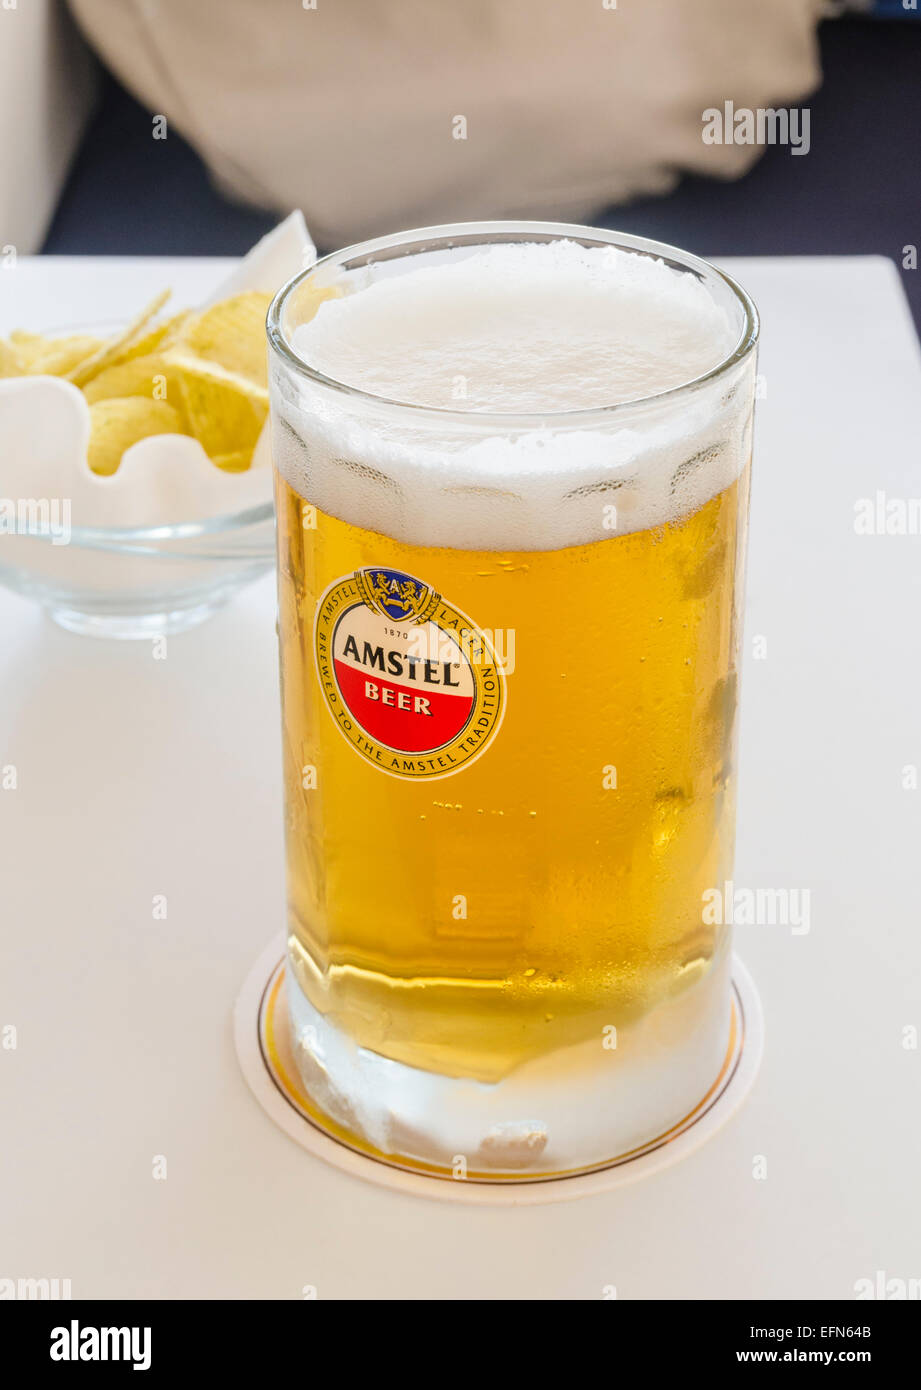 Amstel boccale di birra e patatine snack su un tavolo Foto Stock